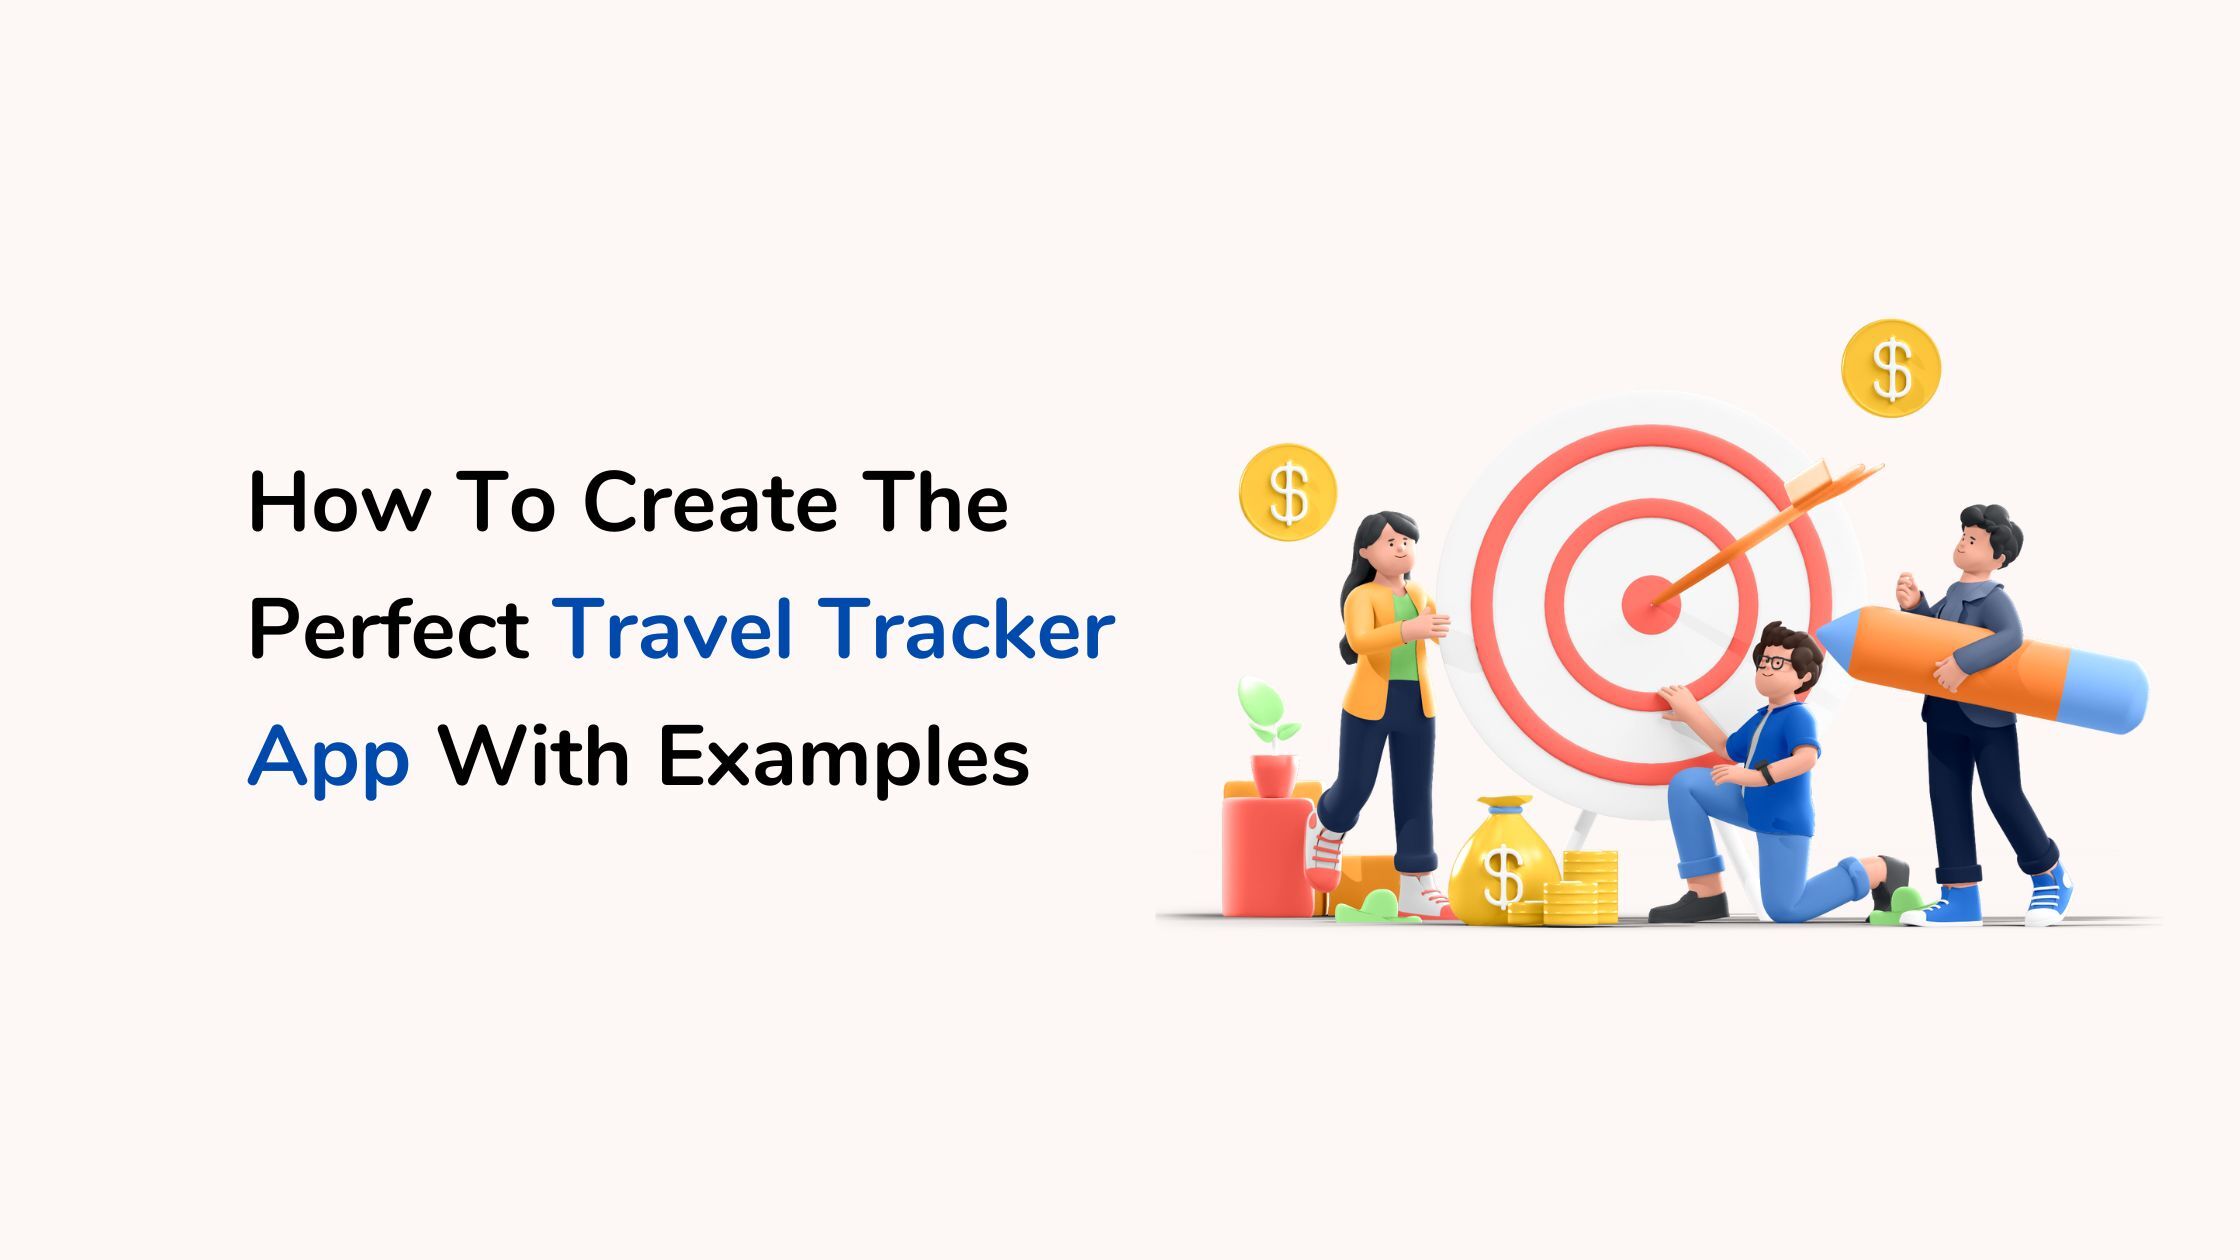 Design of Travel tracker app